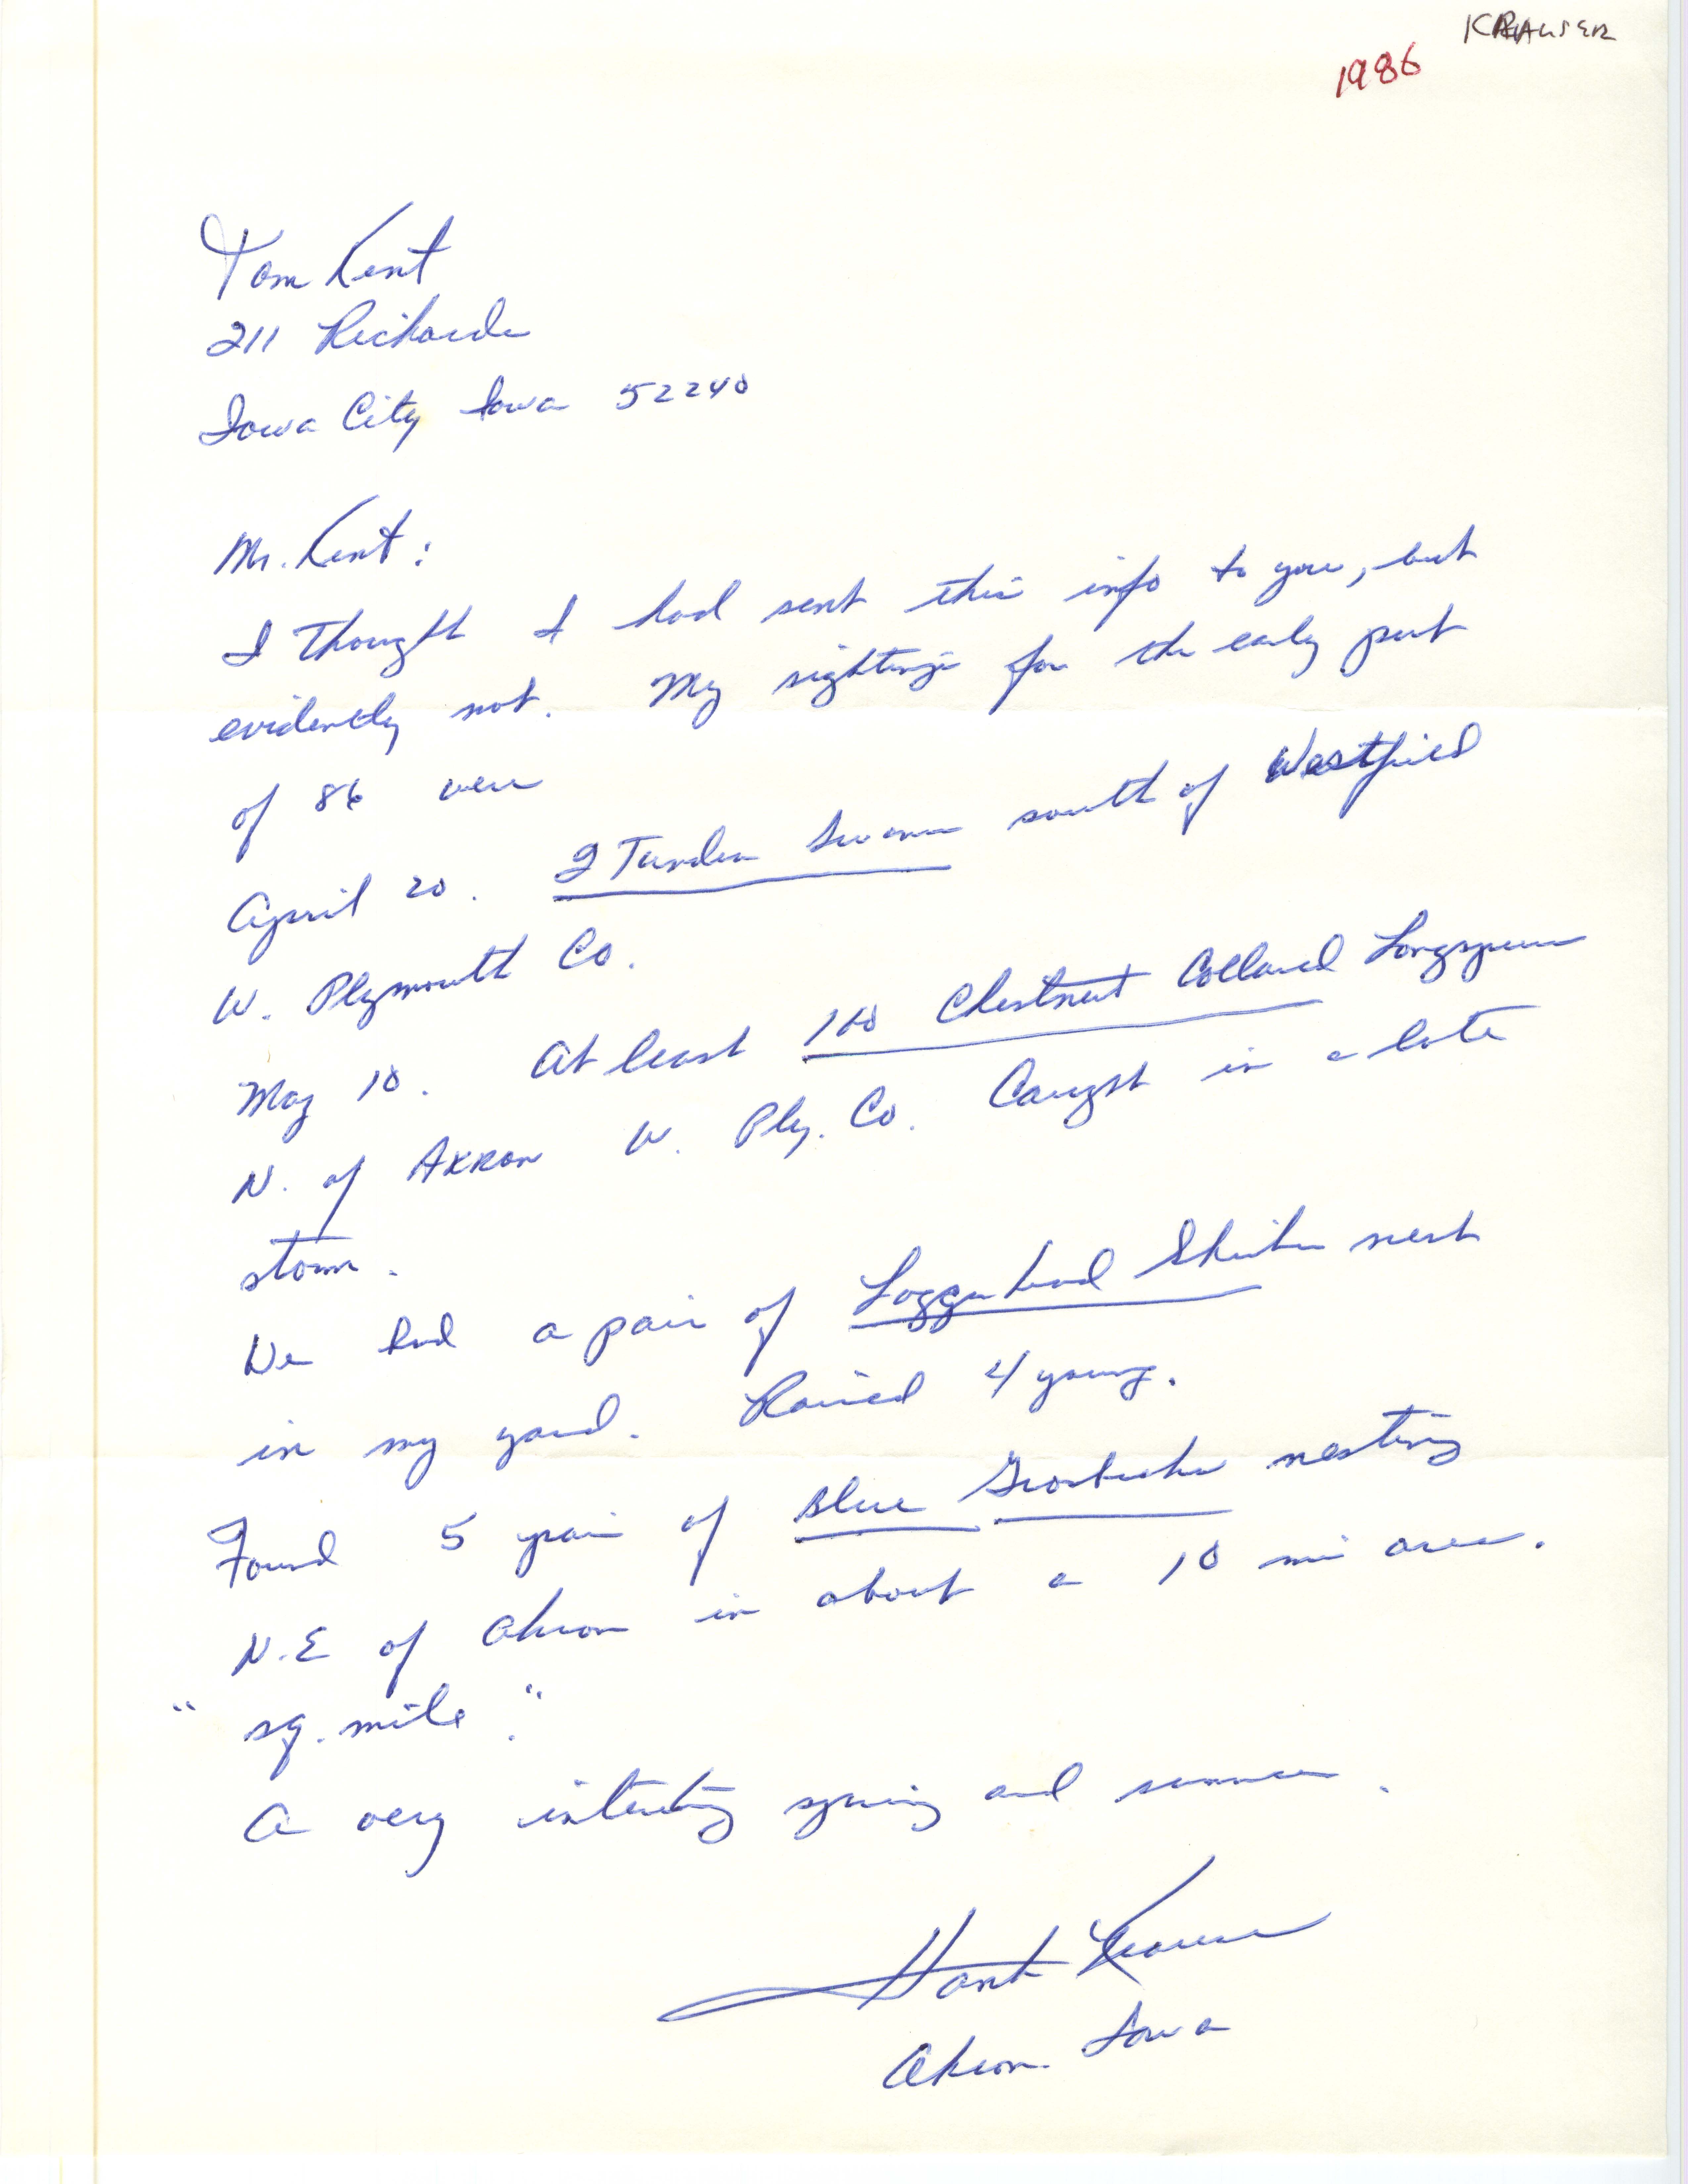 Hank Krause letter to Thomas H. Kent regarding bird sightings, spring 1986